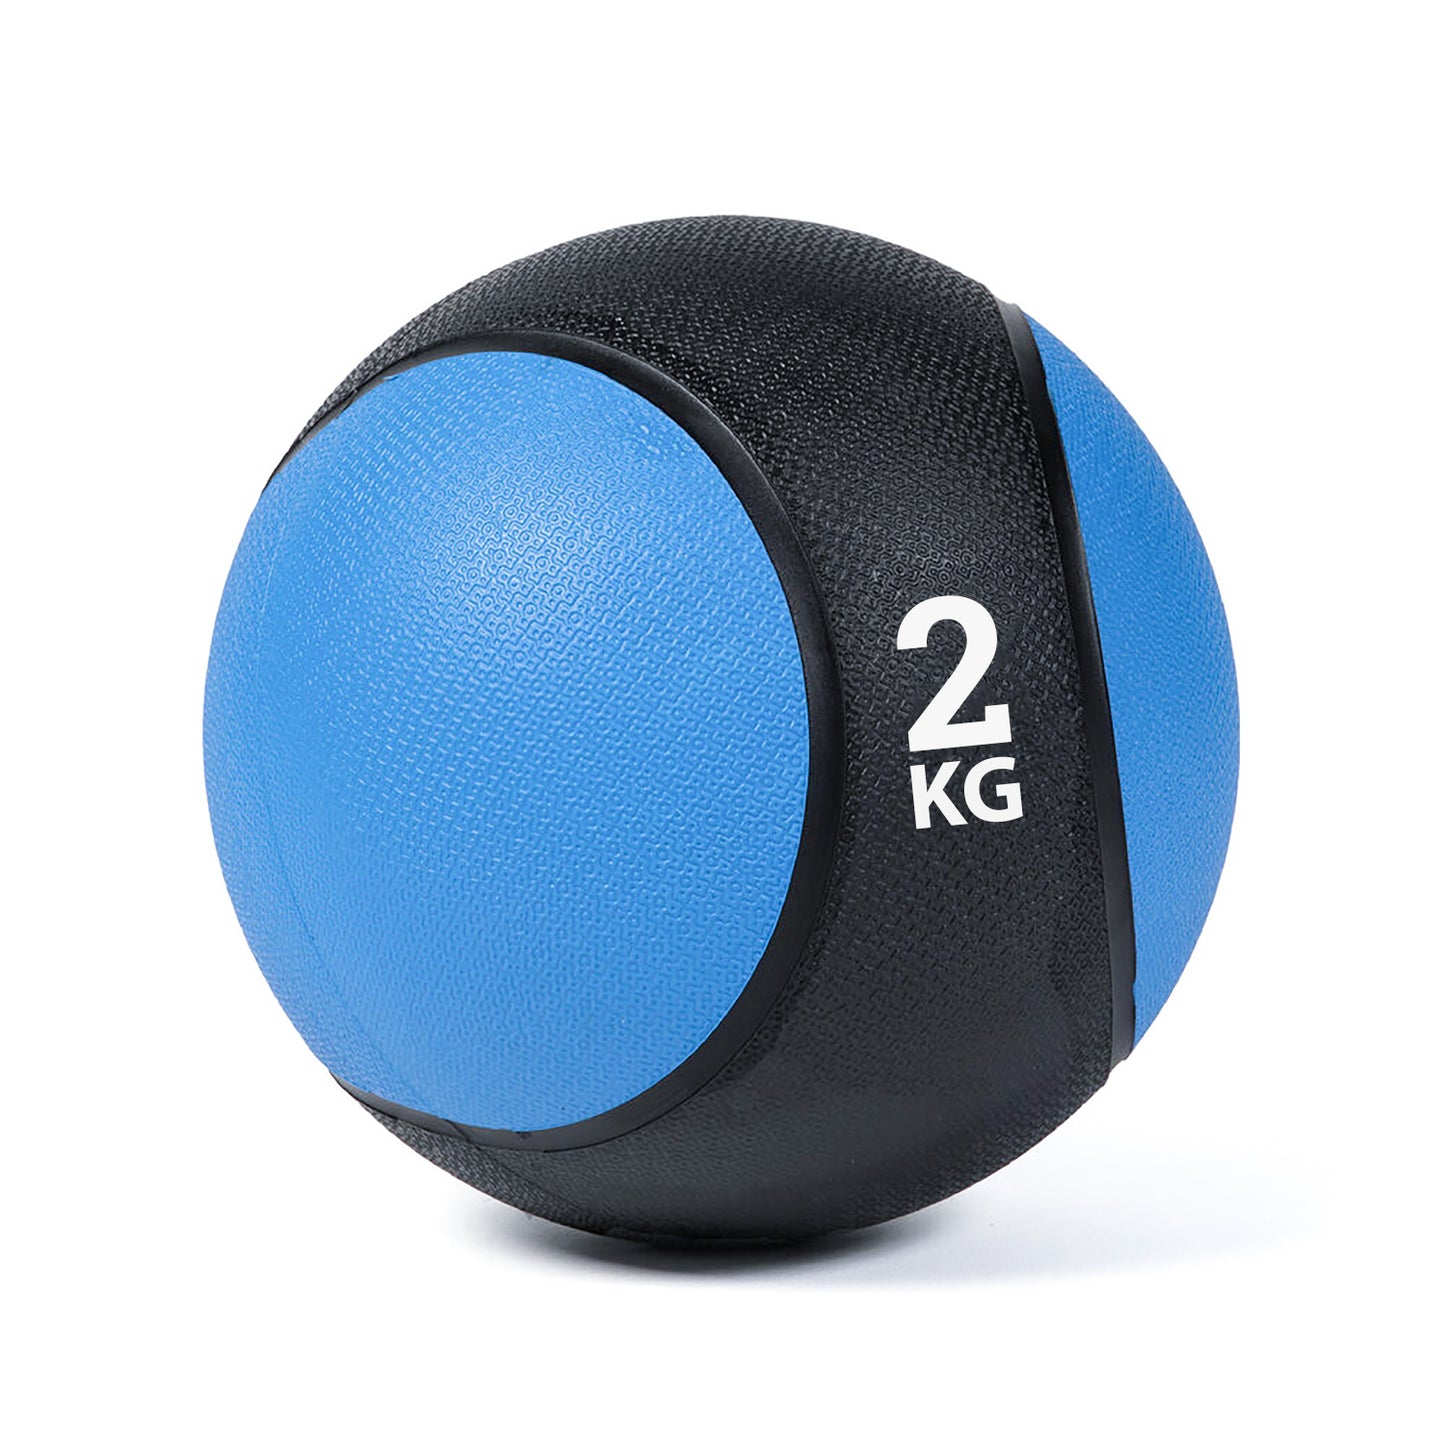 كرة طبية من المطاط لاعادة التأهيل و اللياقة البدنية - لون اسود و ازرق - وزن 2 كيلو جرام